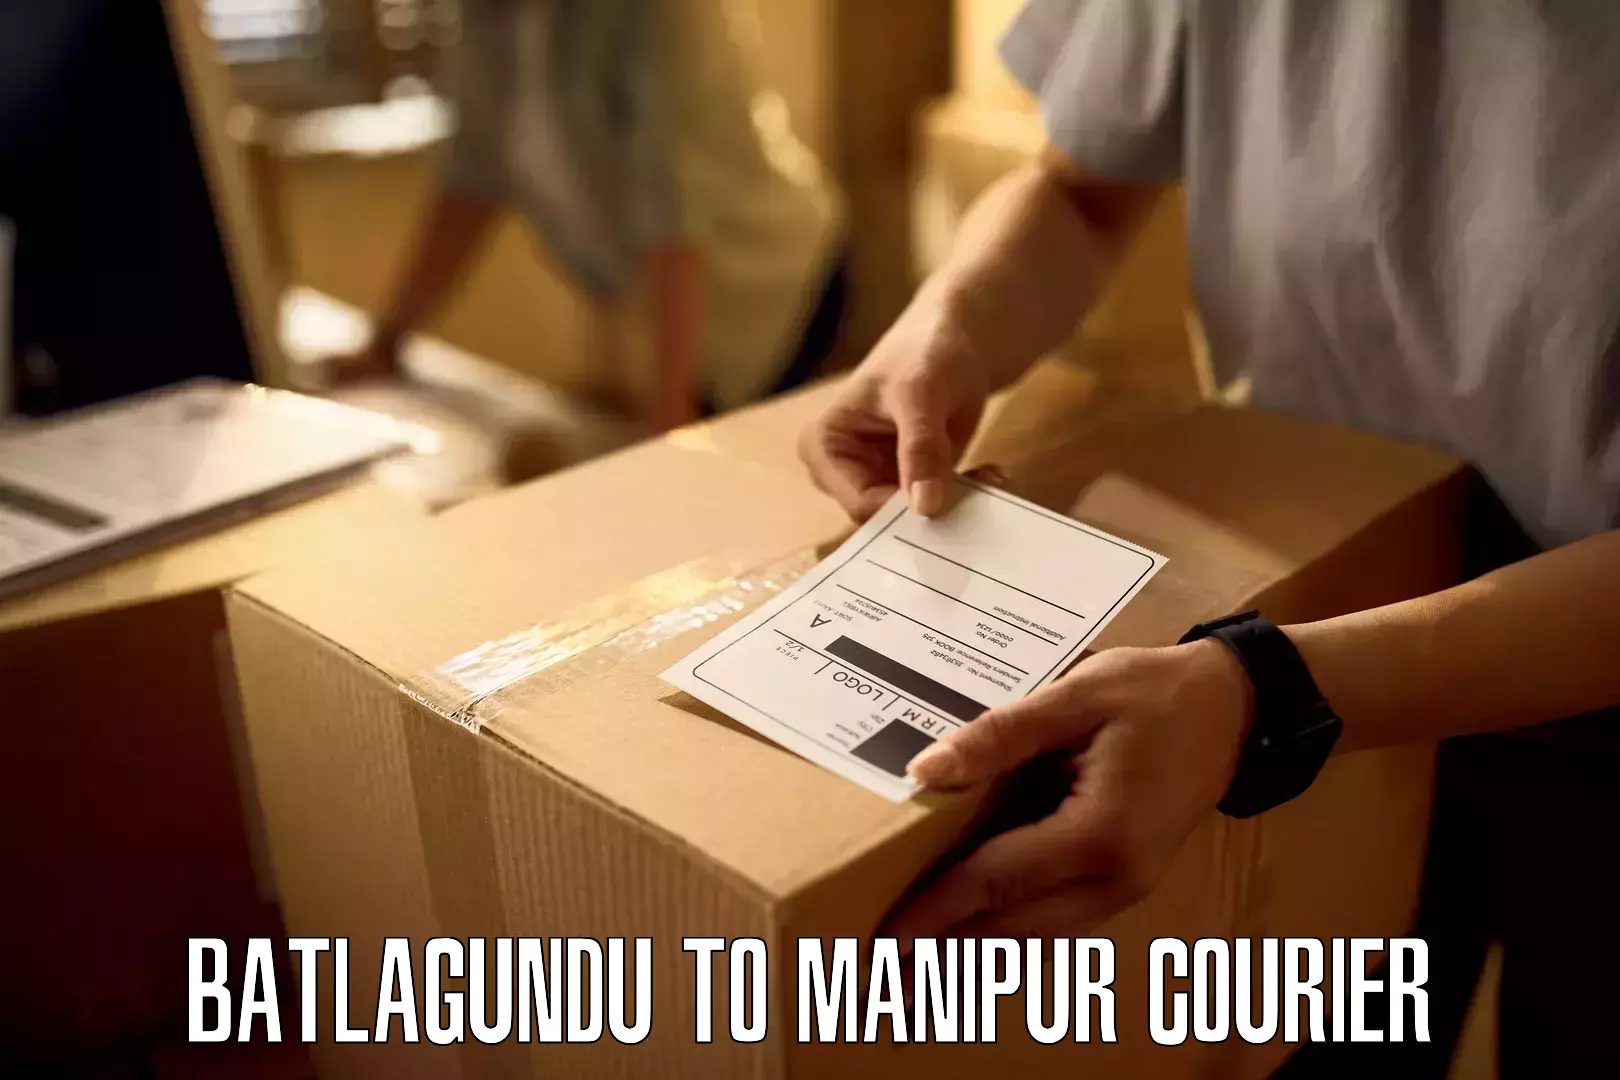 Reliable courier services Batlagundu to Moirang